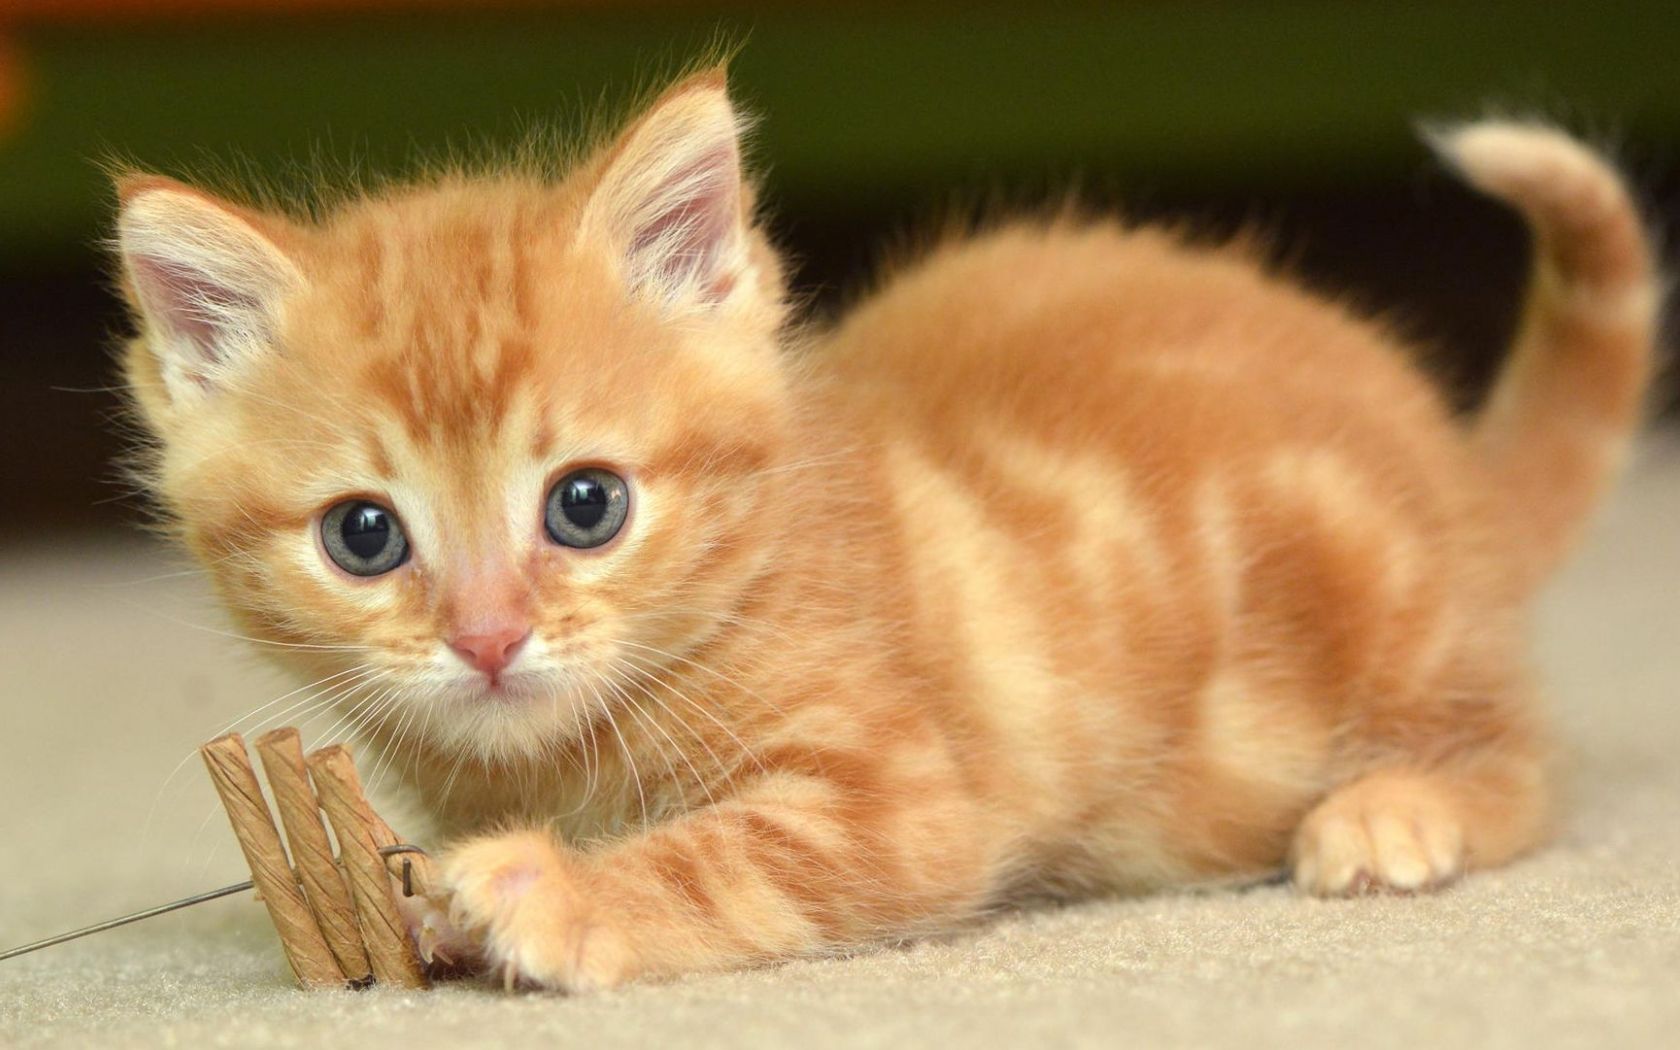 بچه گربه کوچولوی نارنجی در یک قاب هنری دلربا